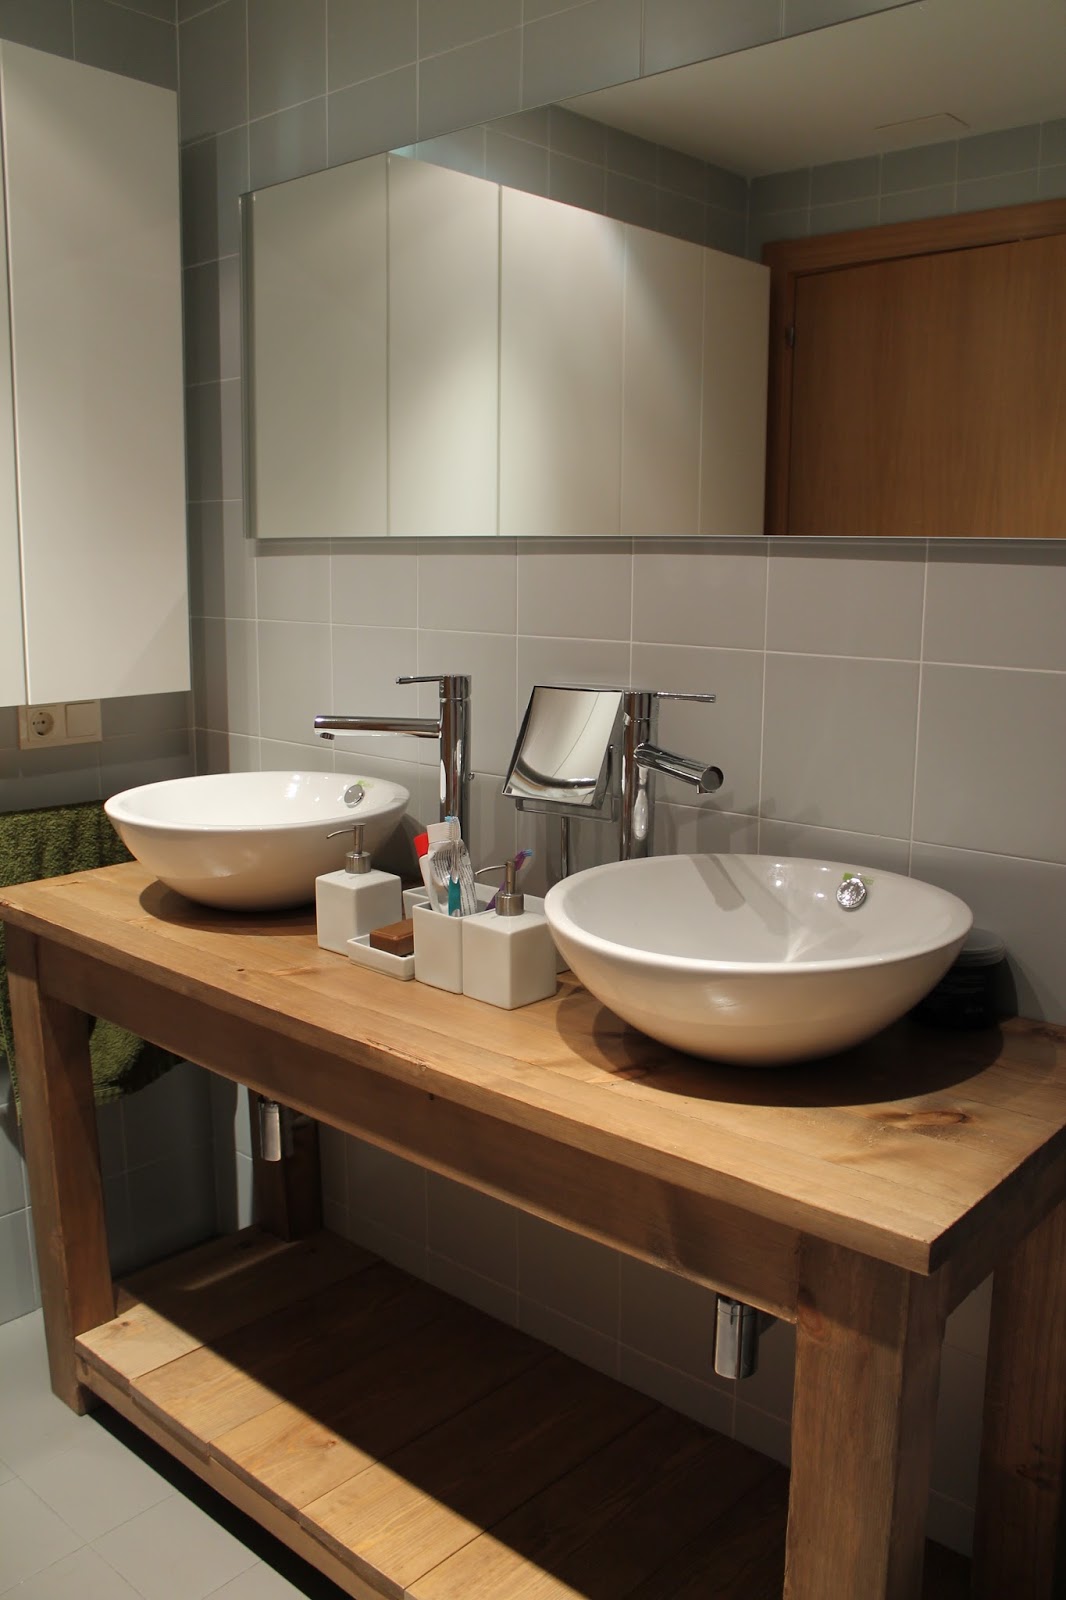 Mueble lavabo en madera: Diseño para que el agua fluya a la última